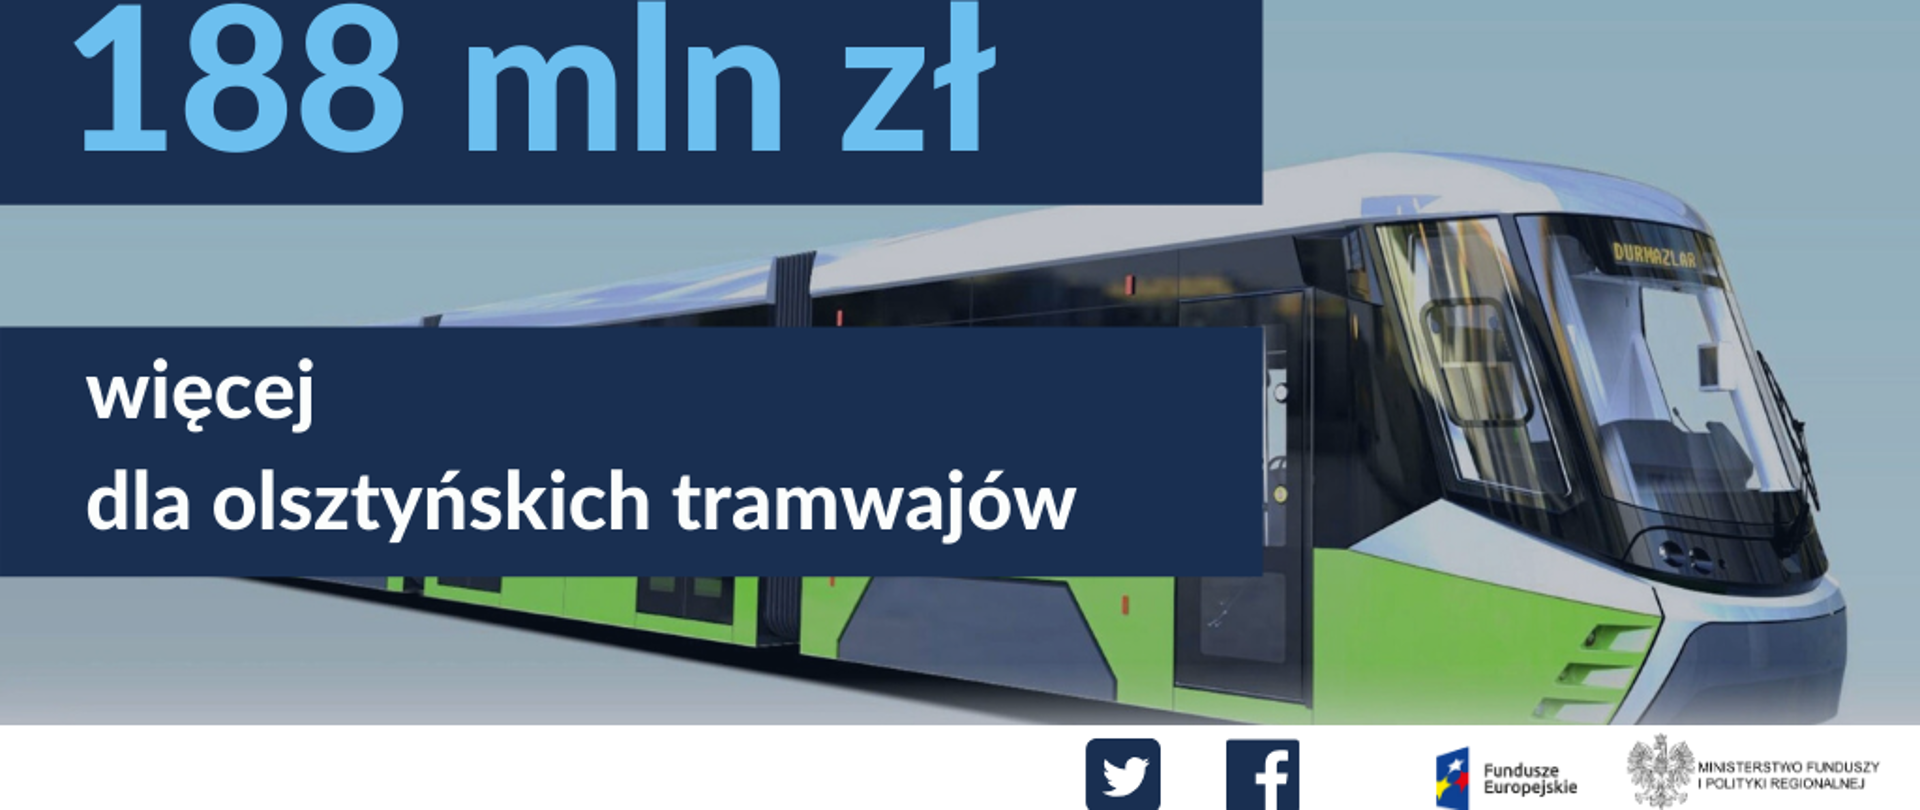 Napis: 188 mln zł więcej dla olsztyńskich tramwajów, w tle zdjęcie olsztyńskiego nowoczesnego, niskopodłogowego tramwaju w kolorach białym, zielonym i szarym